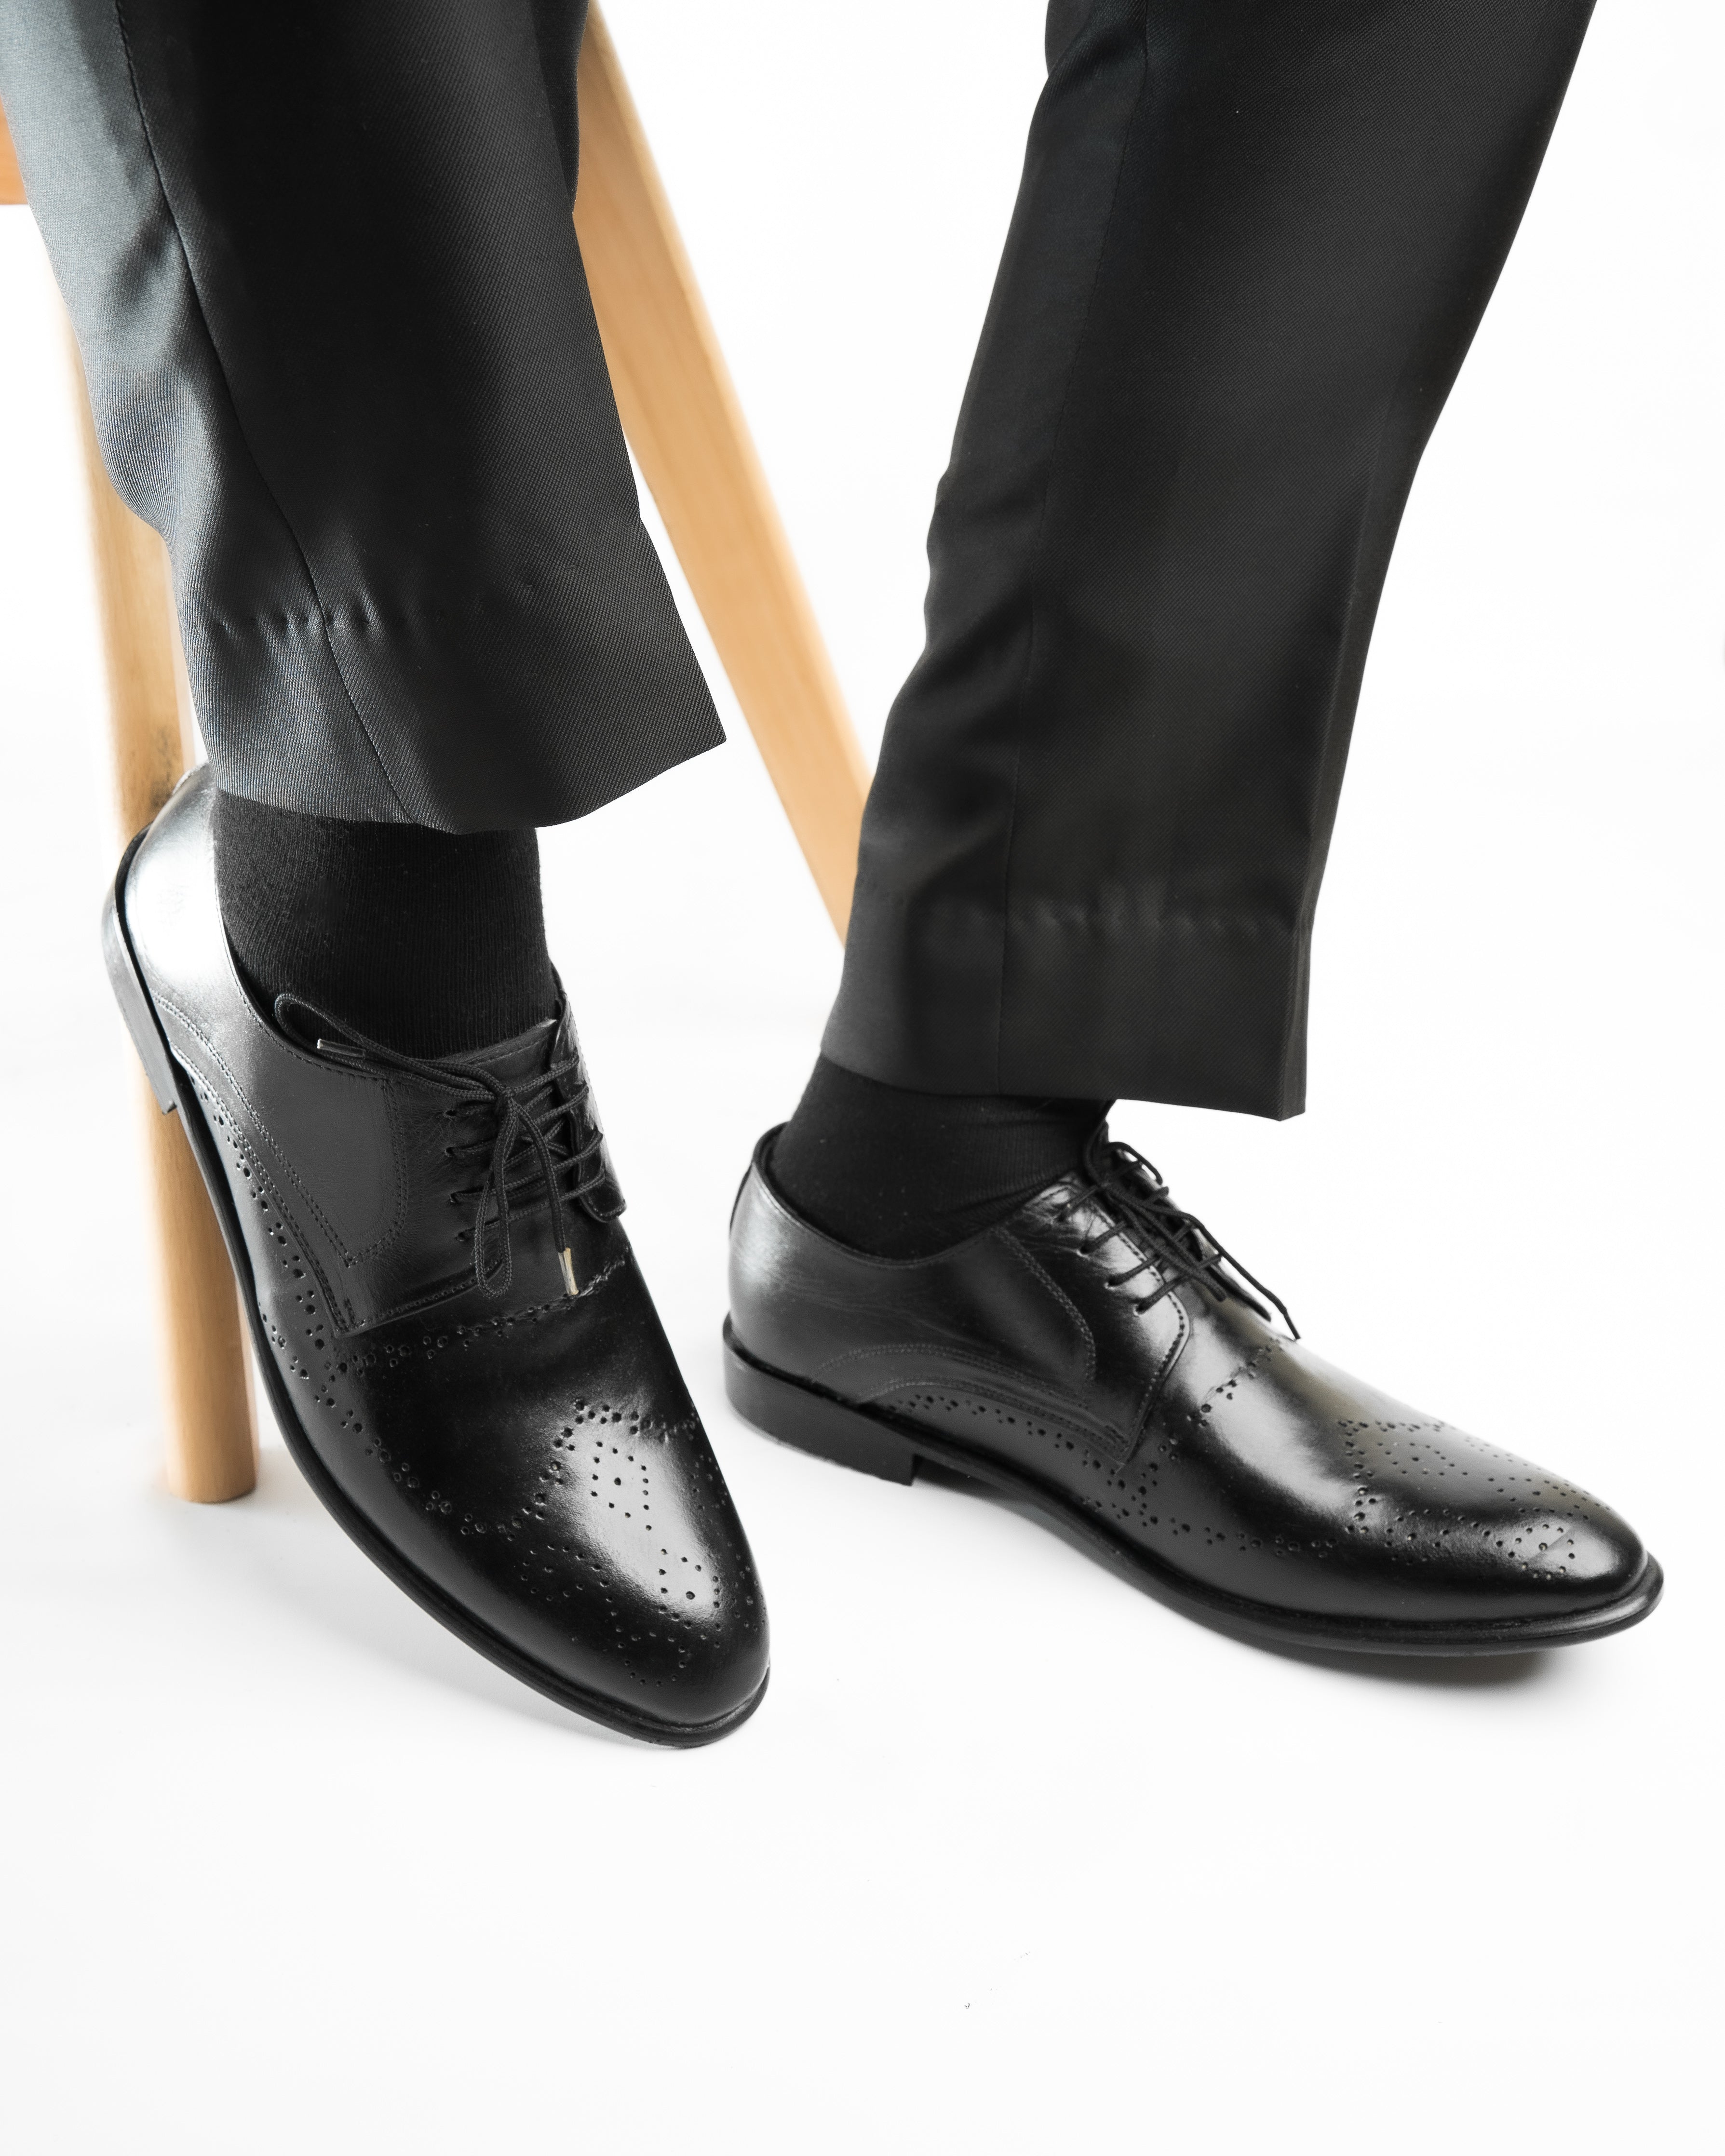 SNS11 Black formal Premium leather Shoes